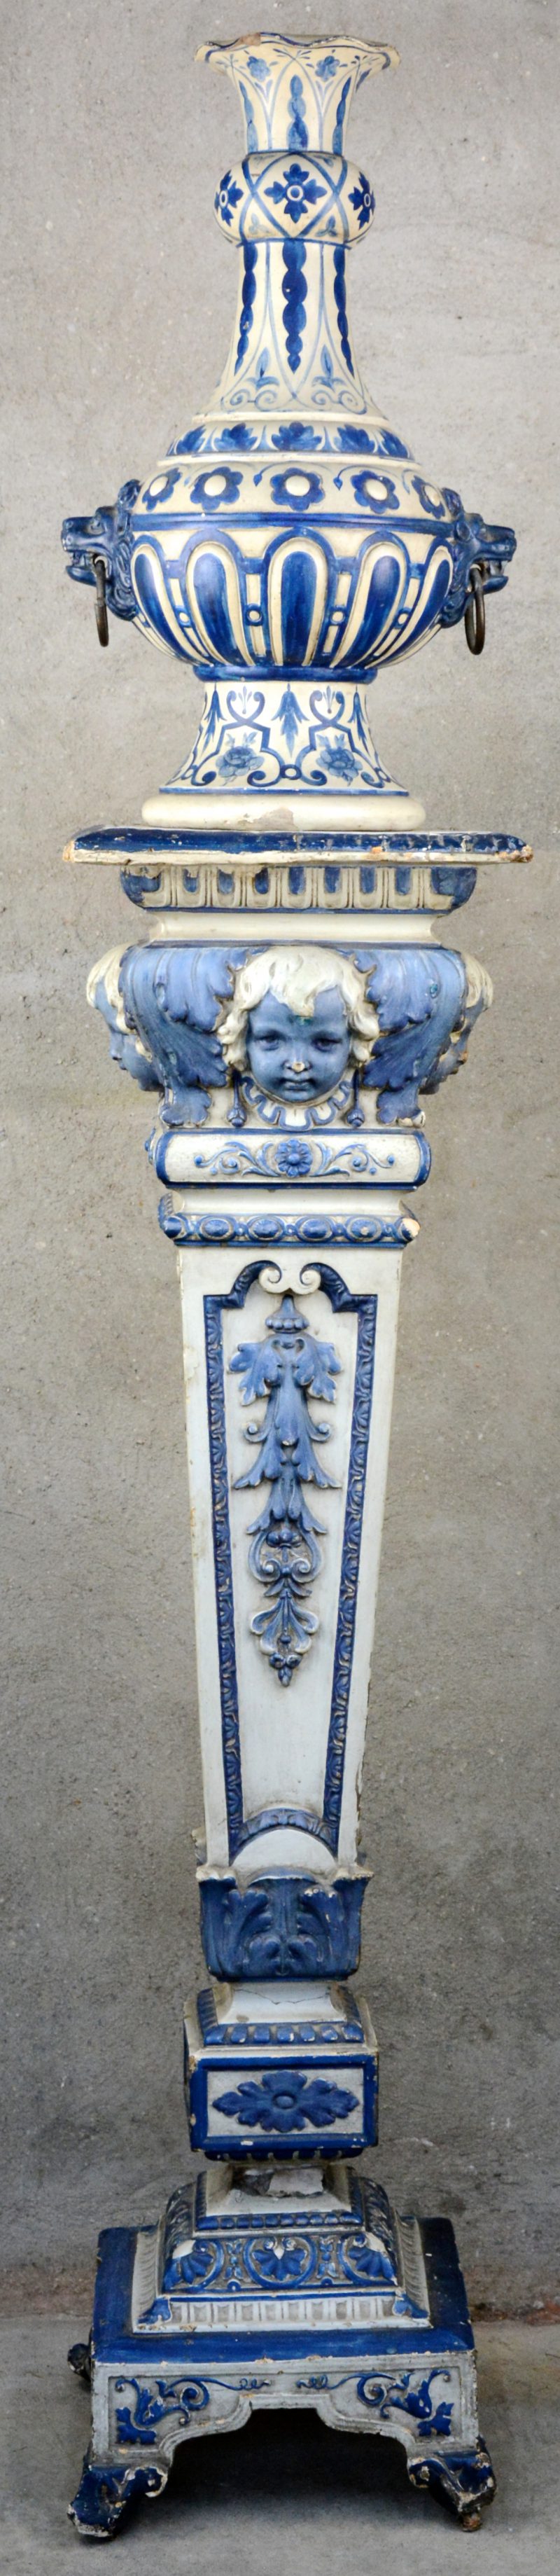 Een plaasteren piedestal in barokke stijl met blauw en wit patina. We voegen er een plaasteren siervaas in dezelfde stijl aan toe.